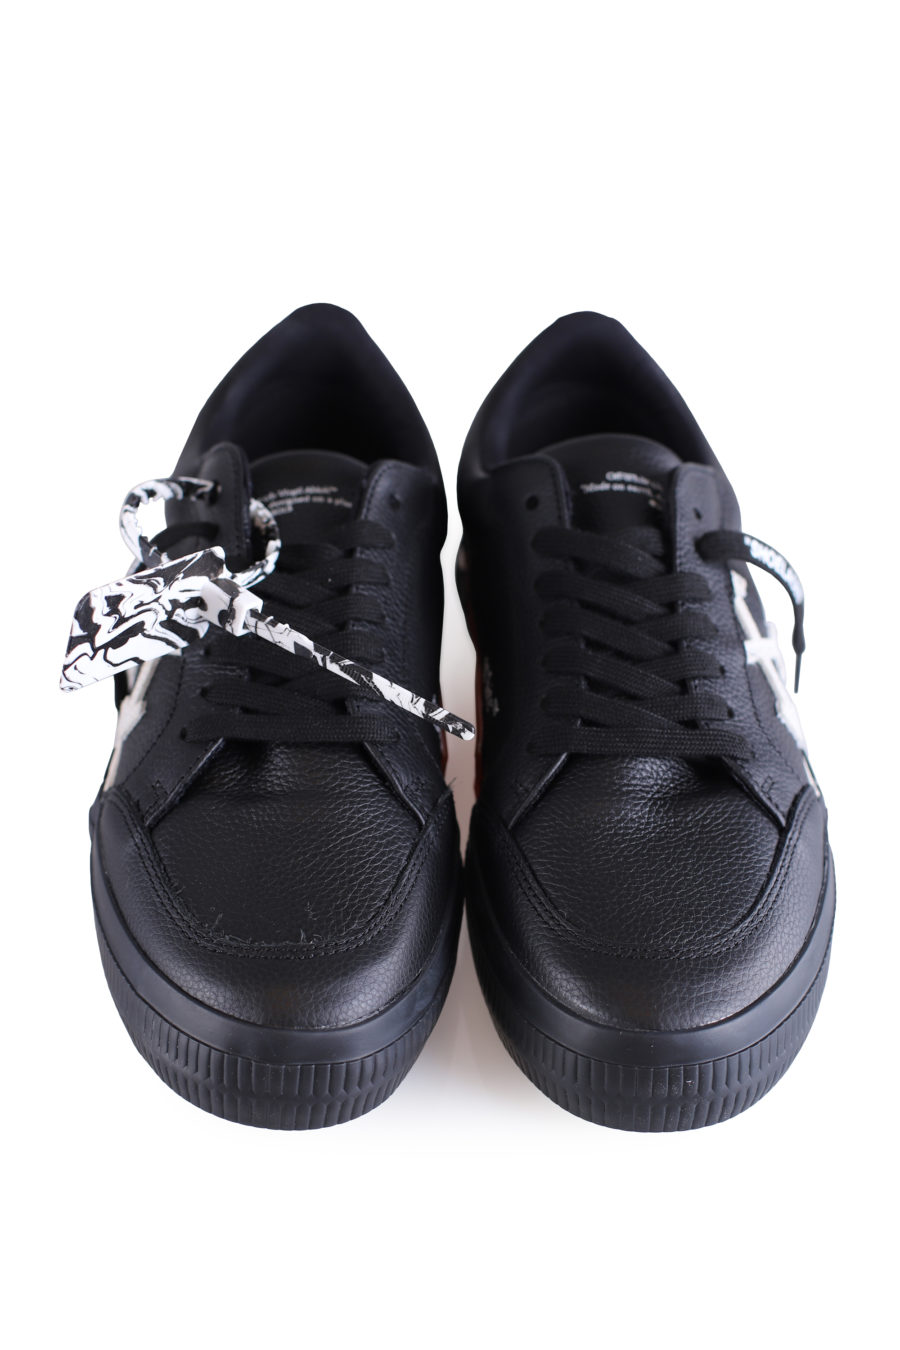 Zapatillas negras "Vulcanized" de cuero - IMG 0678